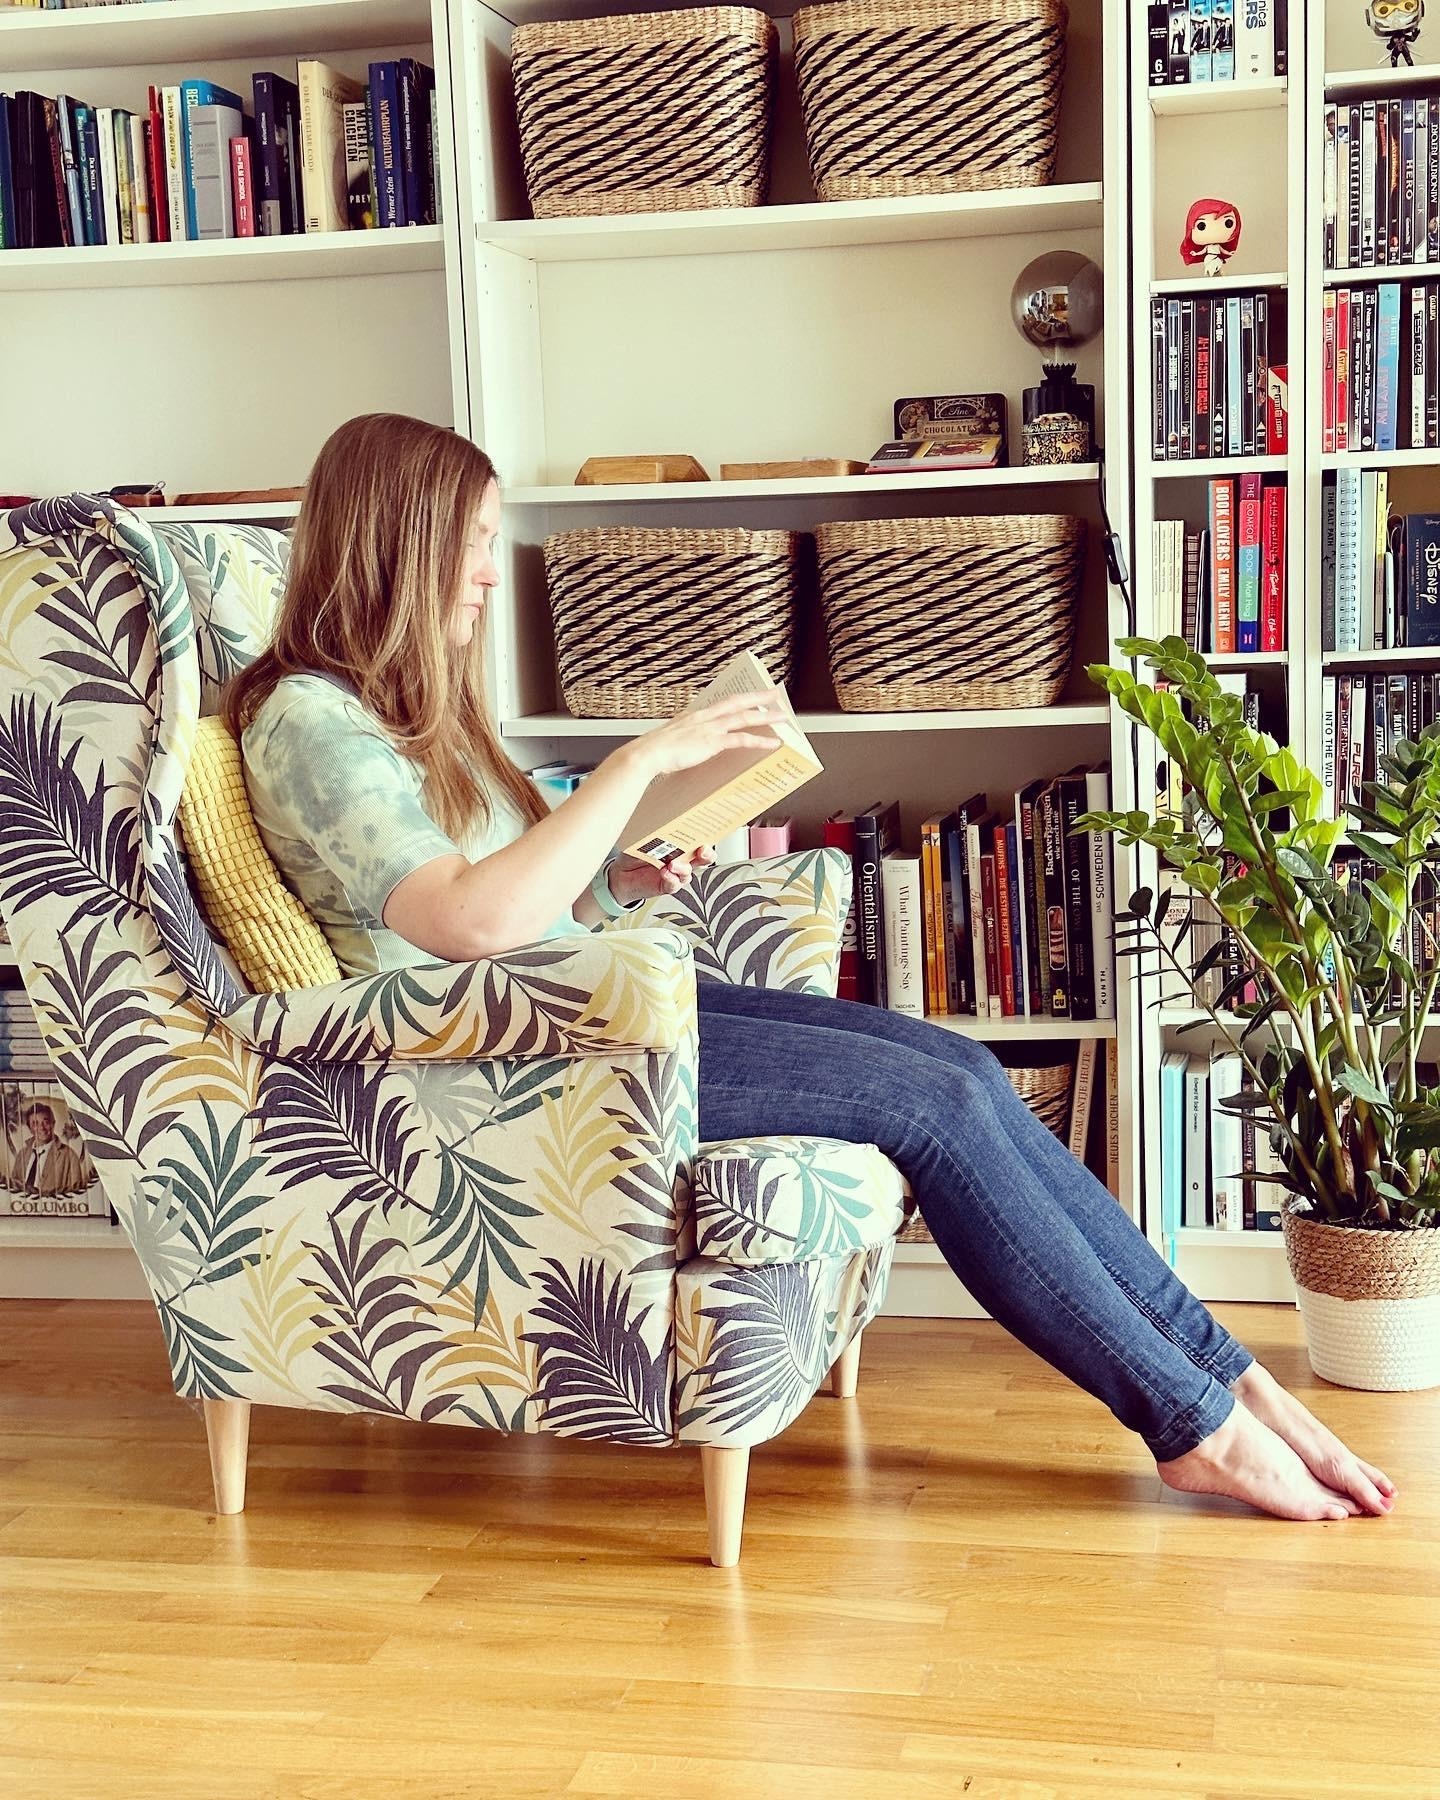 Lesen ist einfach die schönste Entspannungsübung 📖🤍
#bücherregal #sessel #dachgeschoss #couchliebt #wohnzimmer